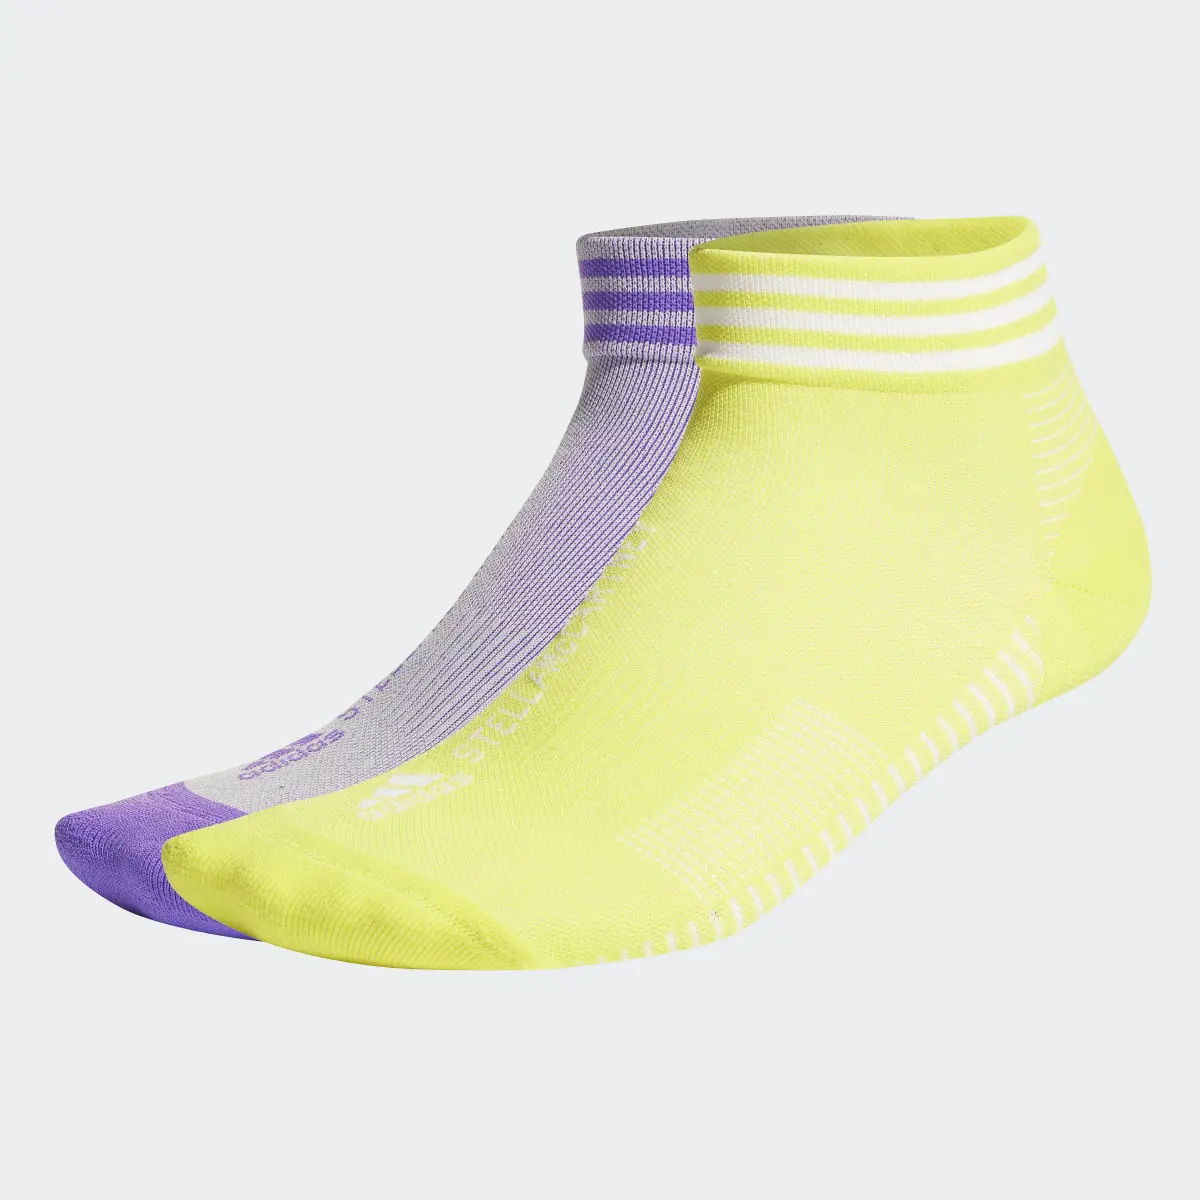 Adidas by Stella McCartney Low Socken, 2 Paar. 2